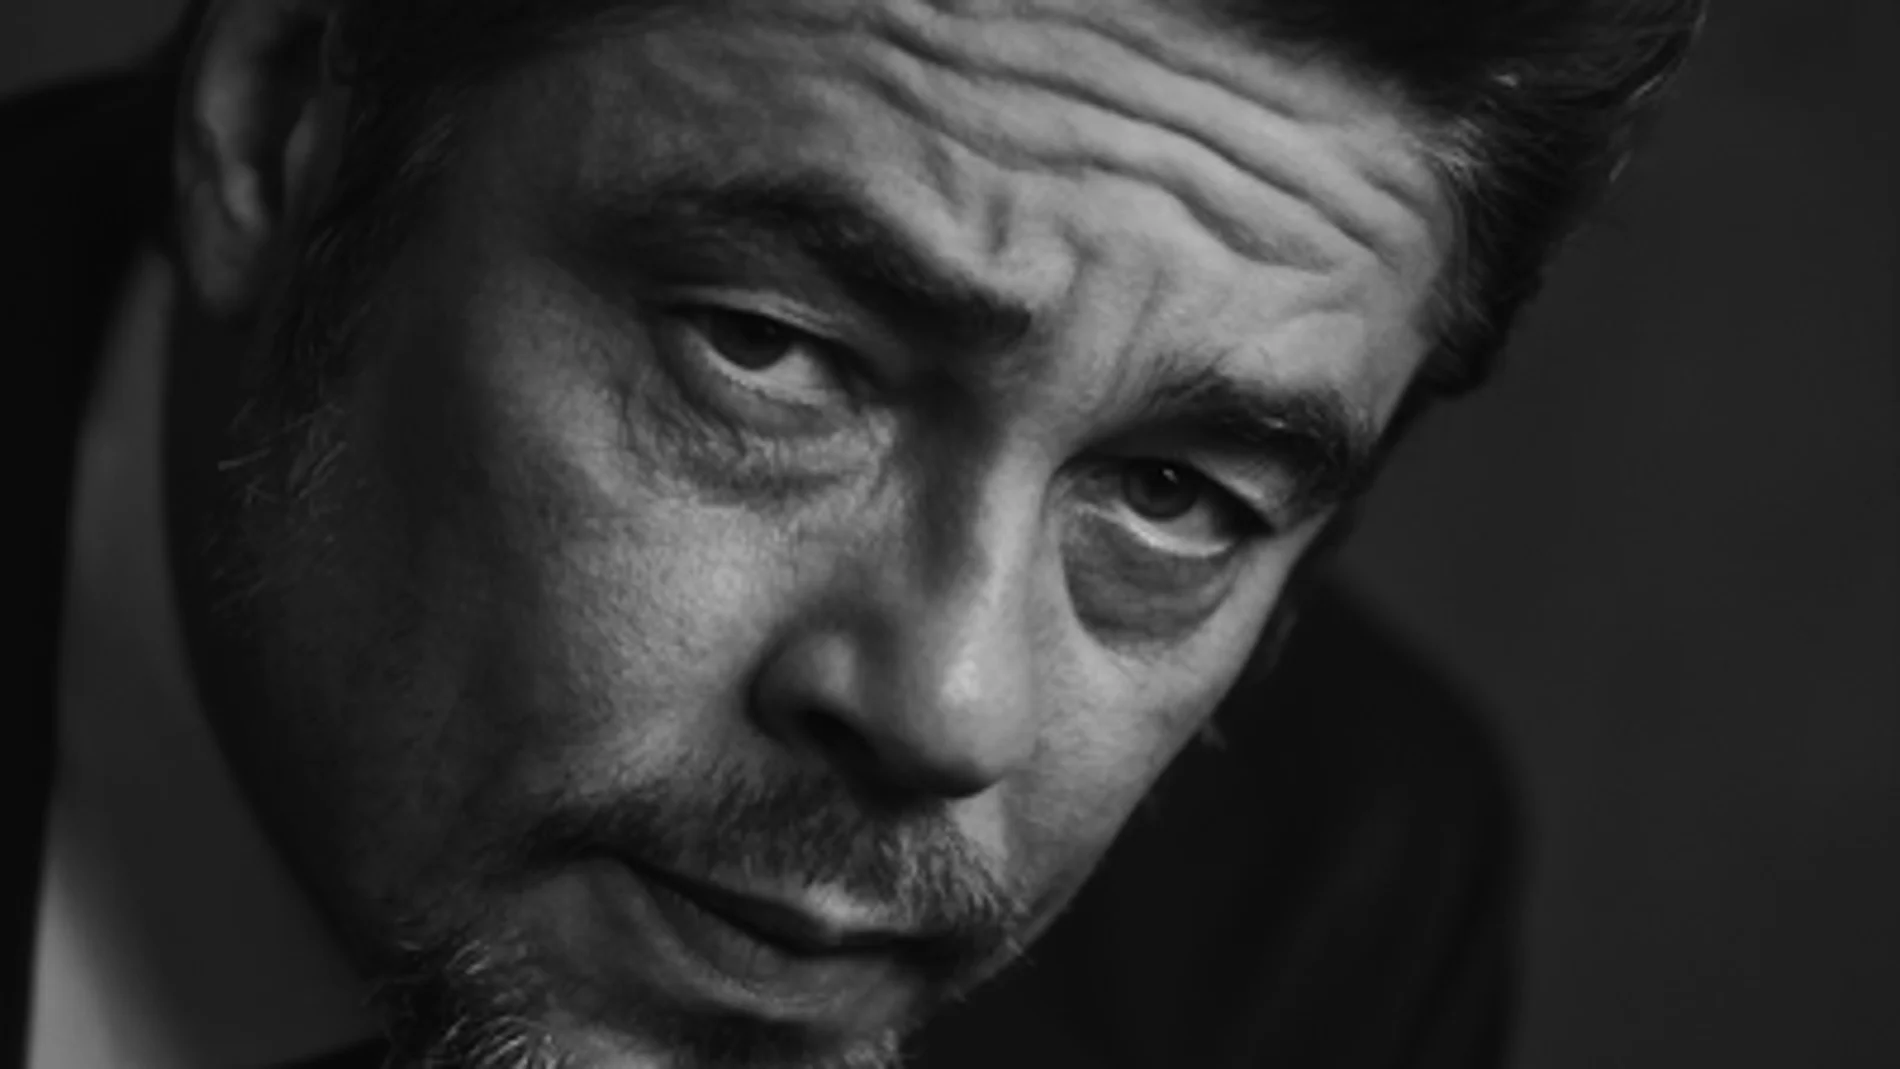 Benicio del Toro, Premio de Honor en los próximos Premios Platino